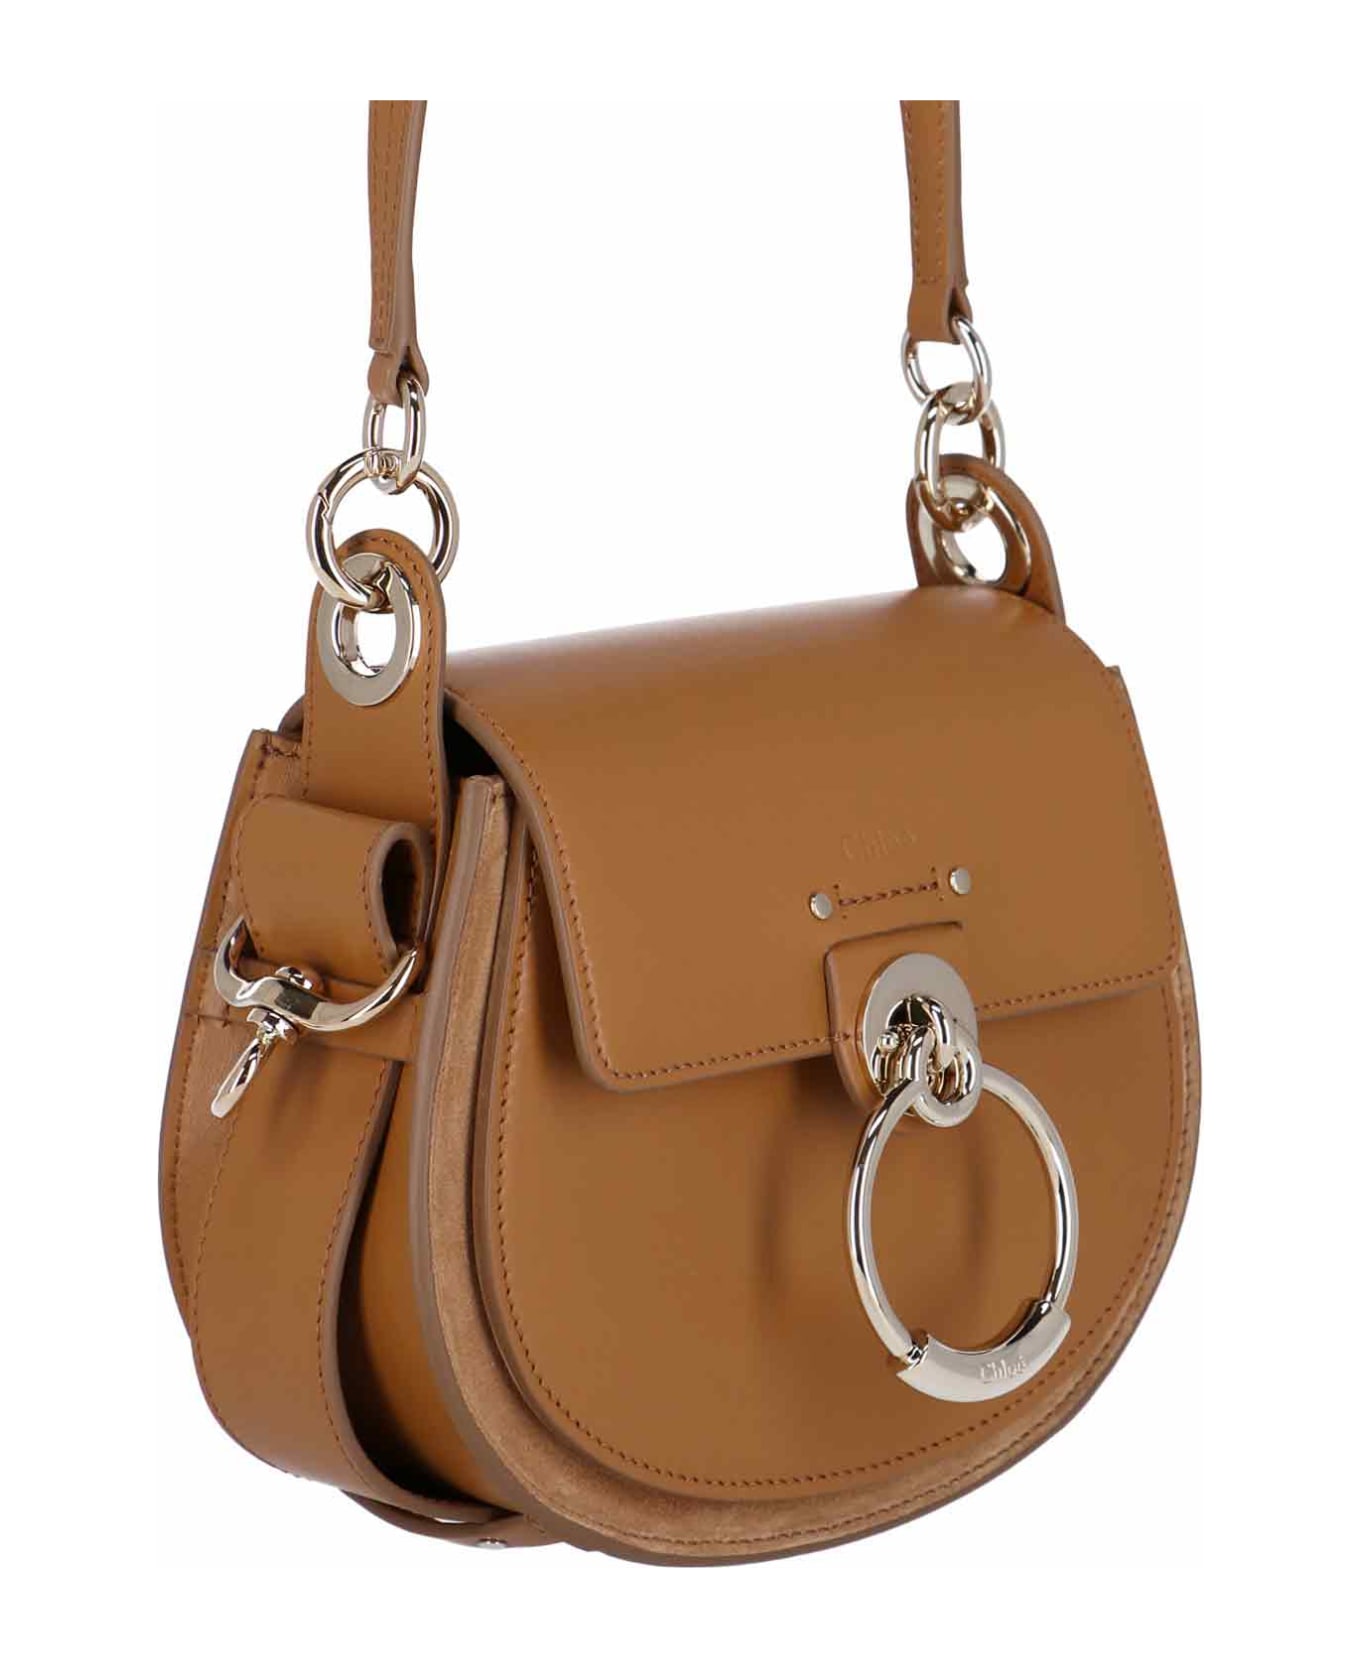 Chloé Tess Small Handbag - Brown